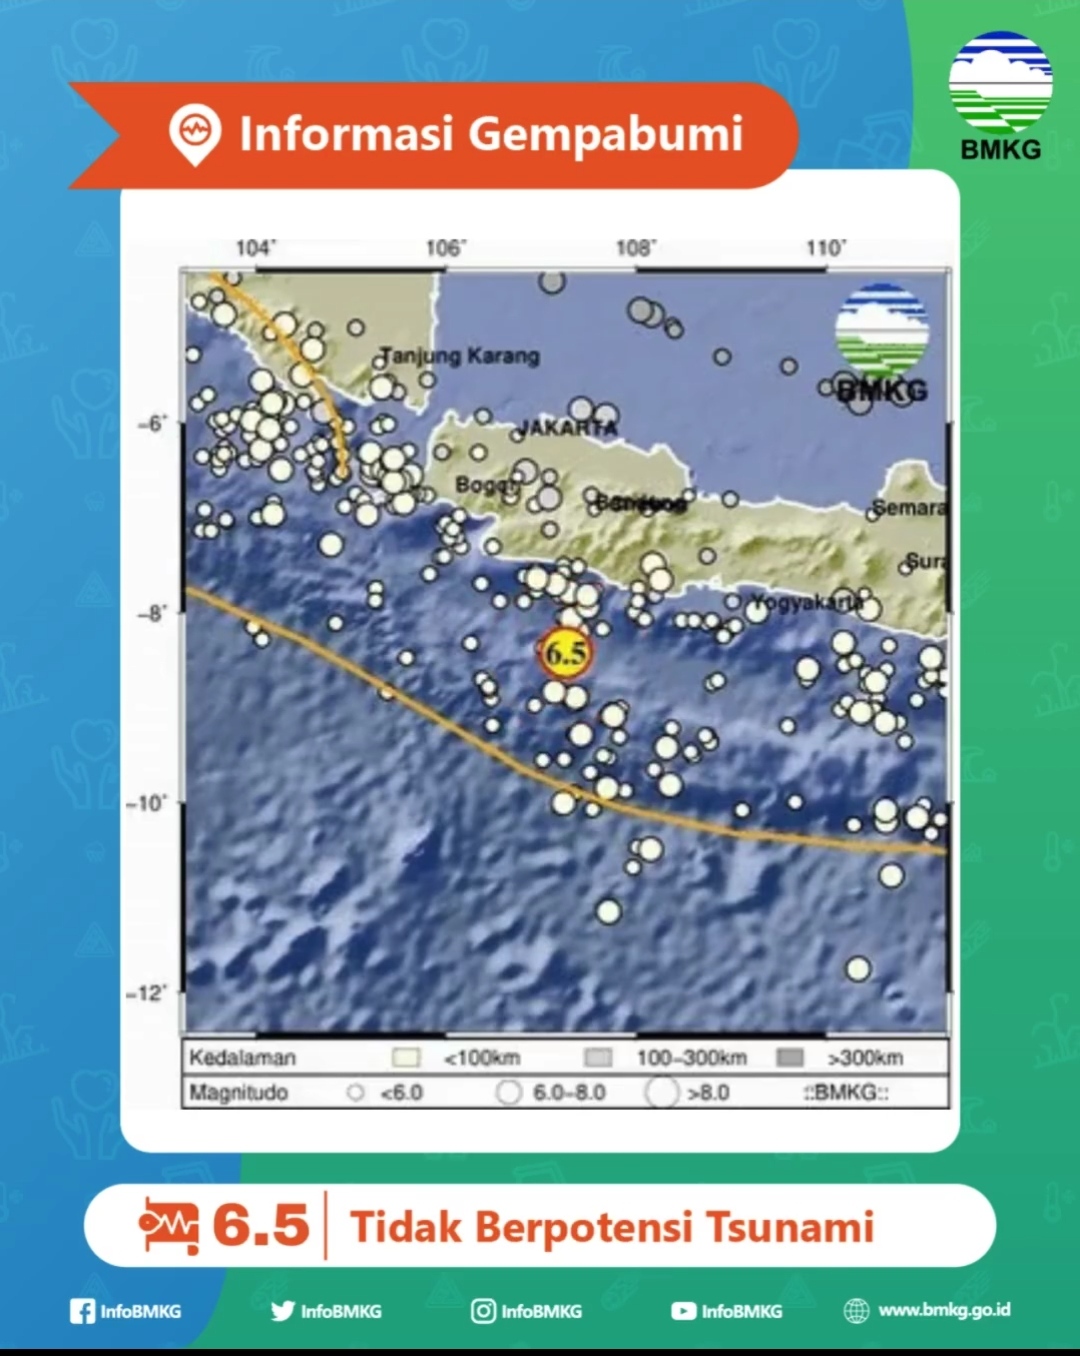 Gempa Garut M 6,5 Guncang Jakarta Hingga Jawa Timur, Ini Penjelasan BMKG